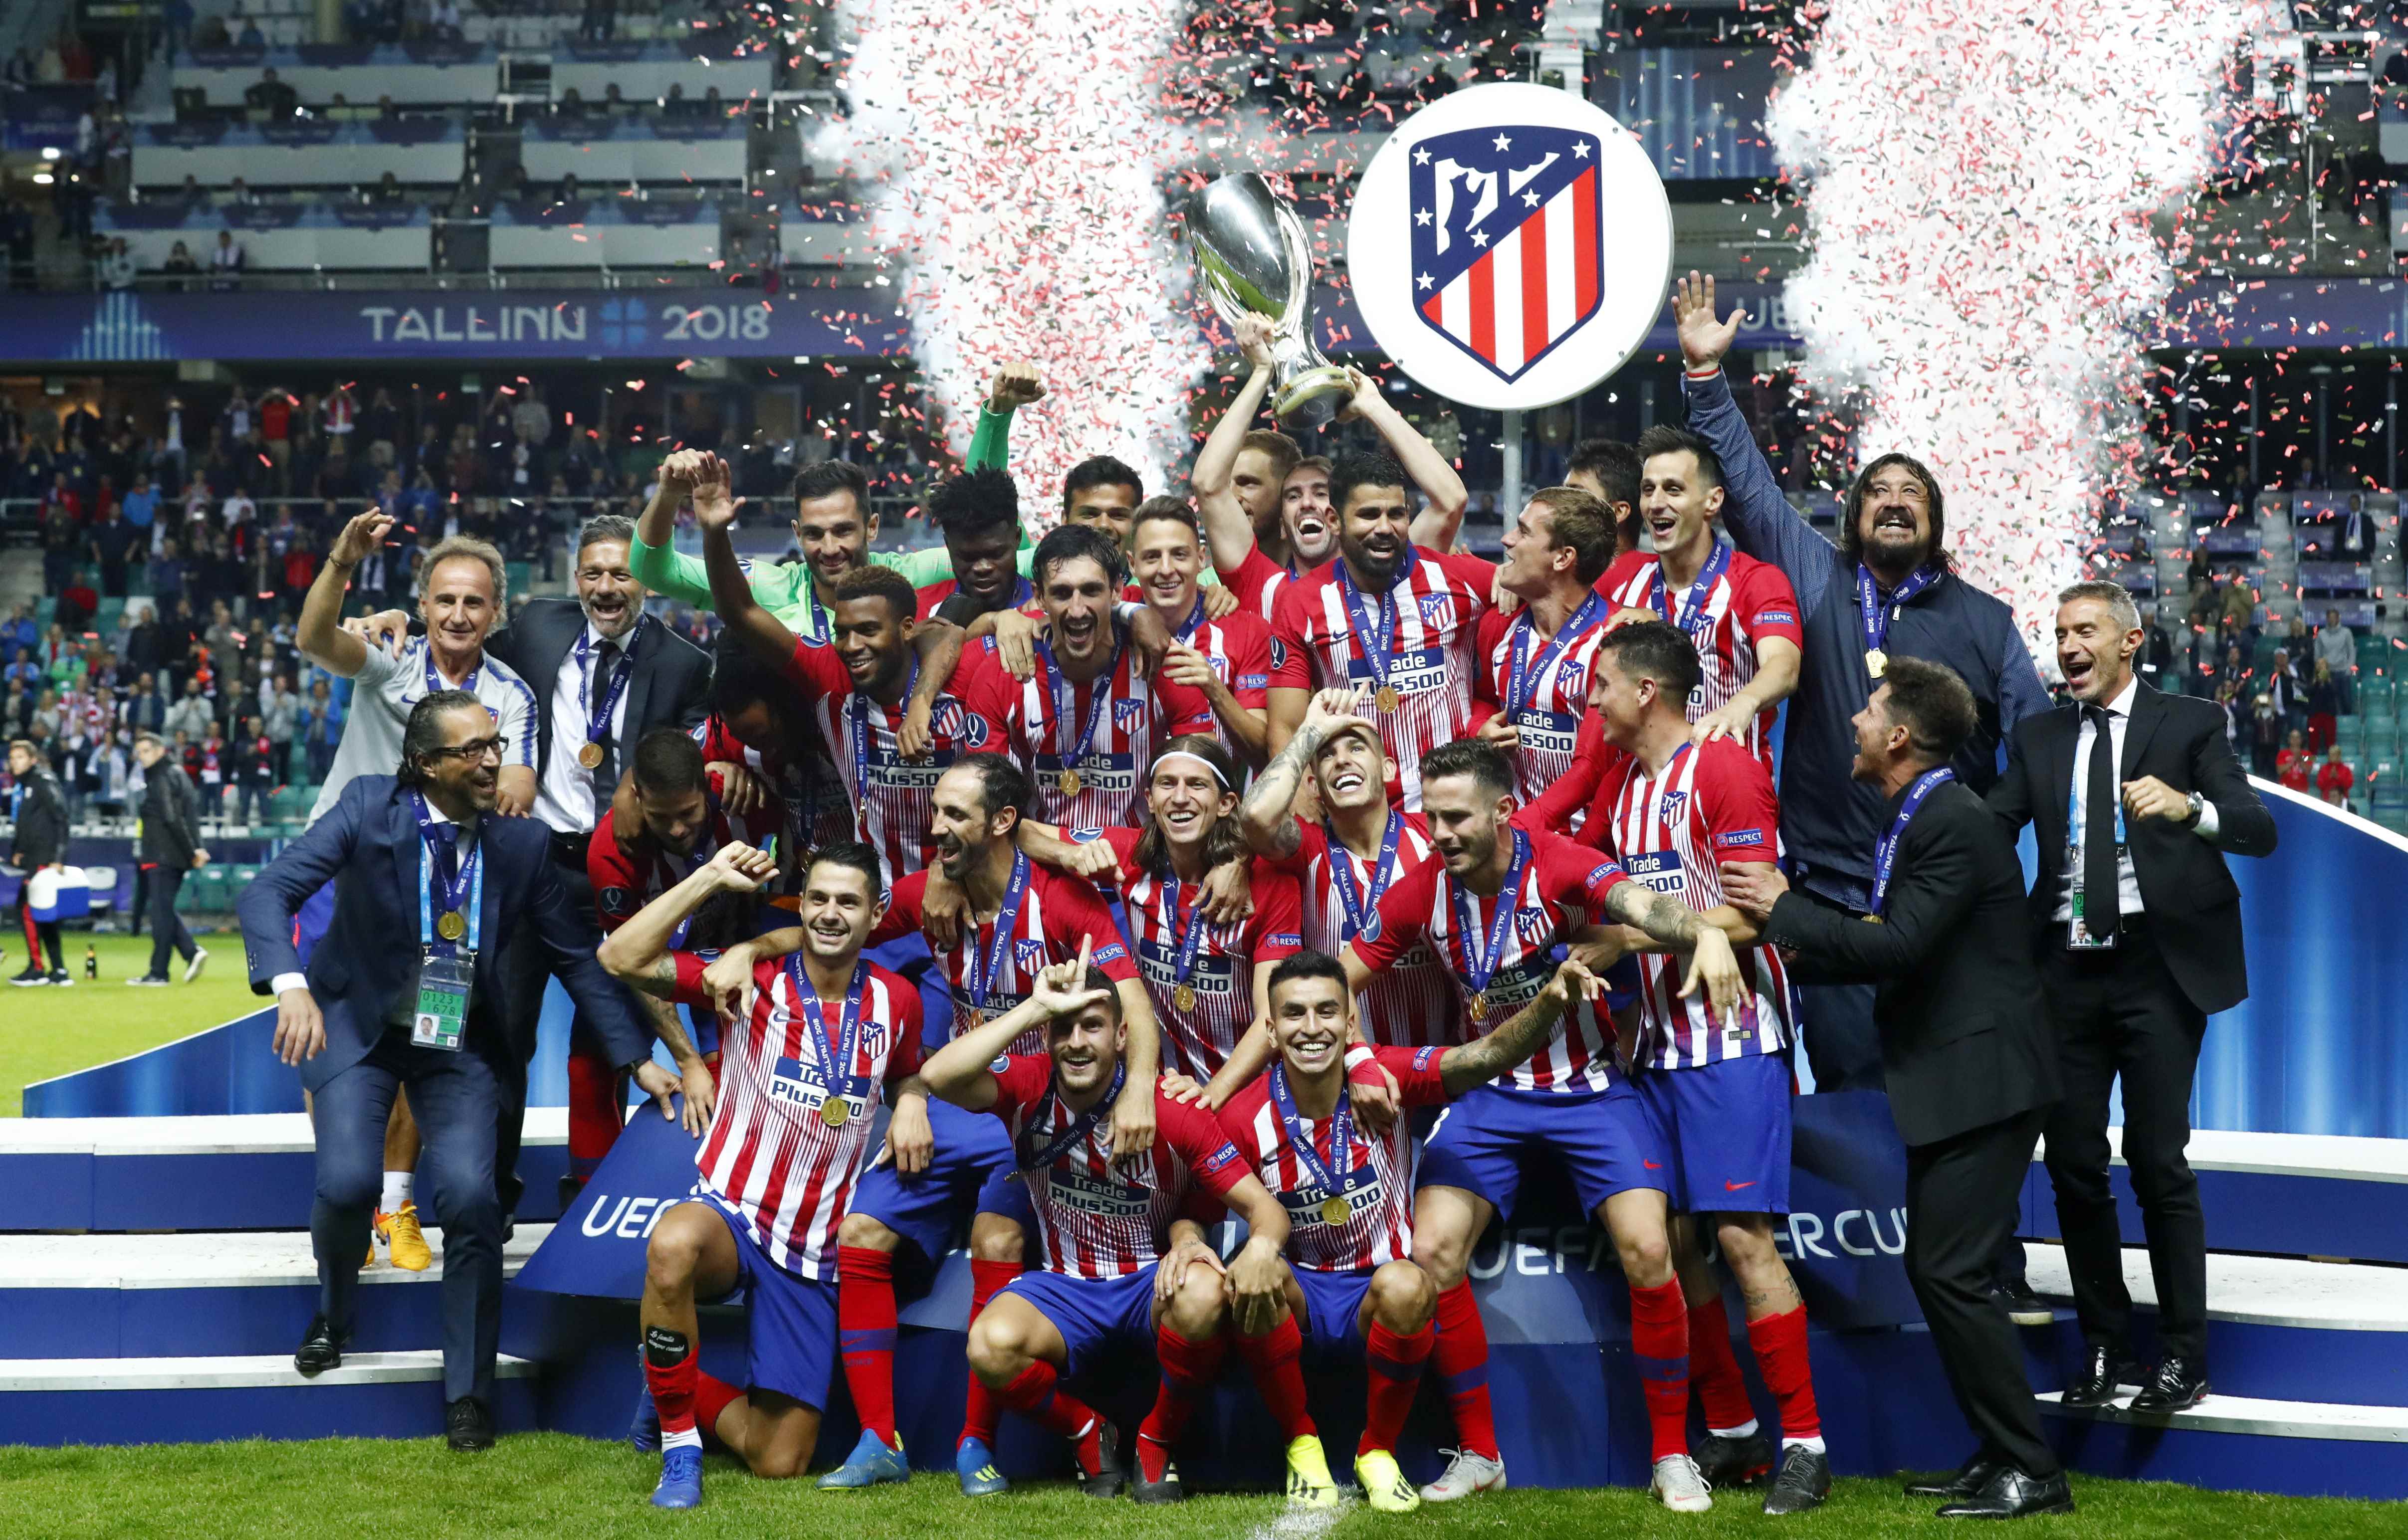 El supercampeón europeo es de Madrid… ¡Pero Atlético!